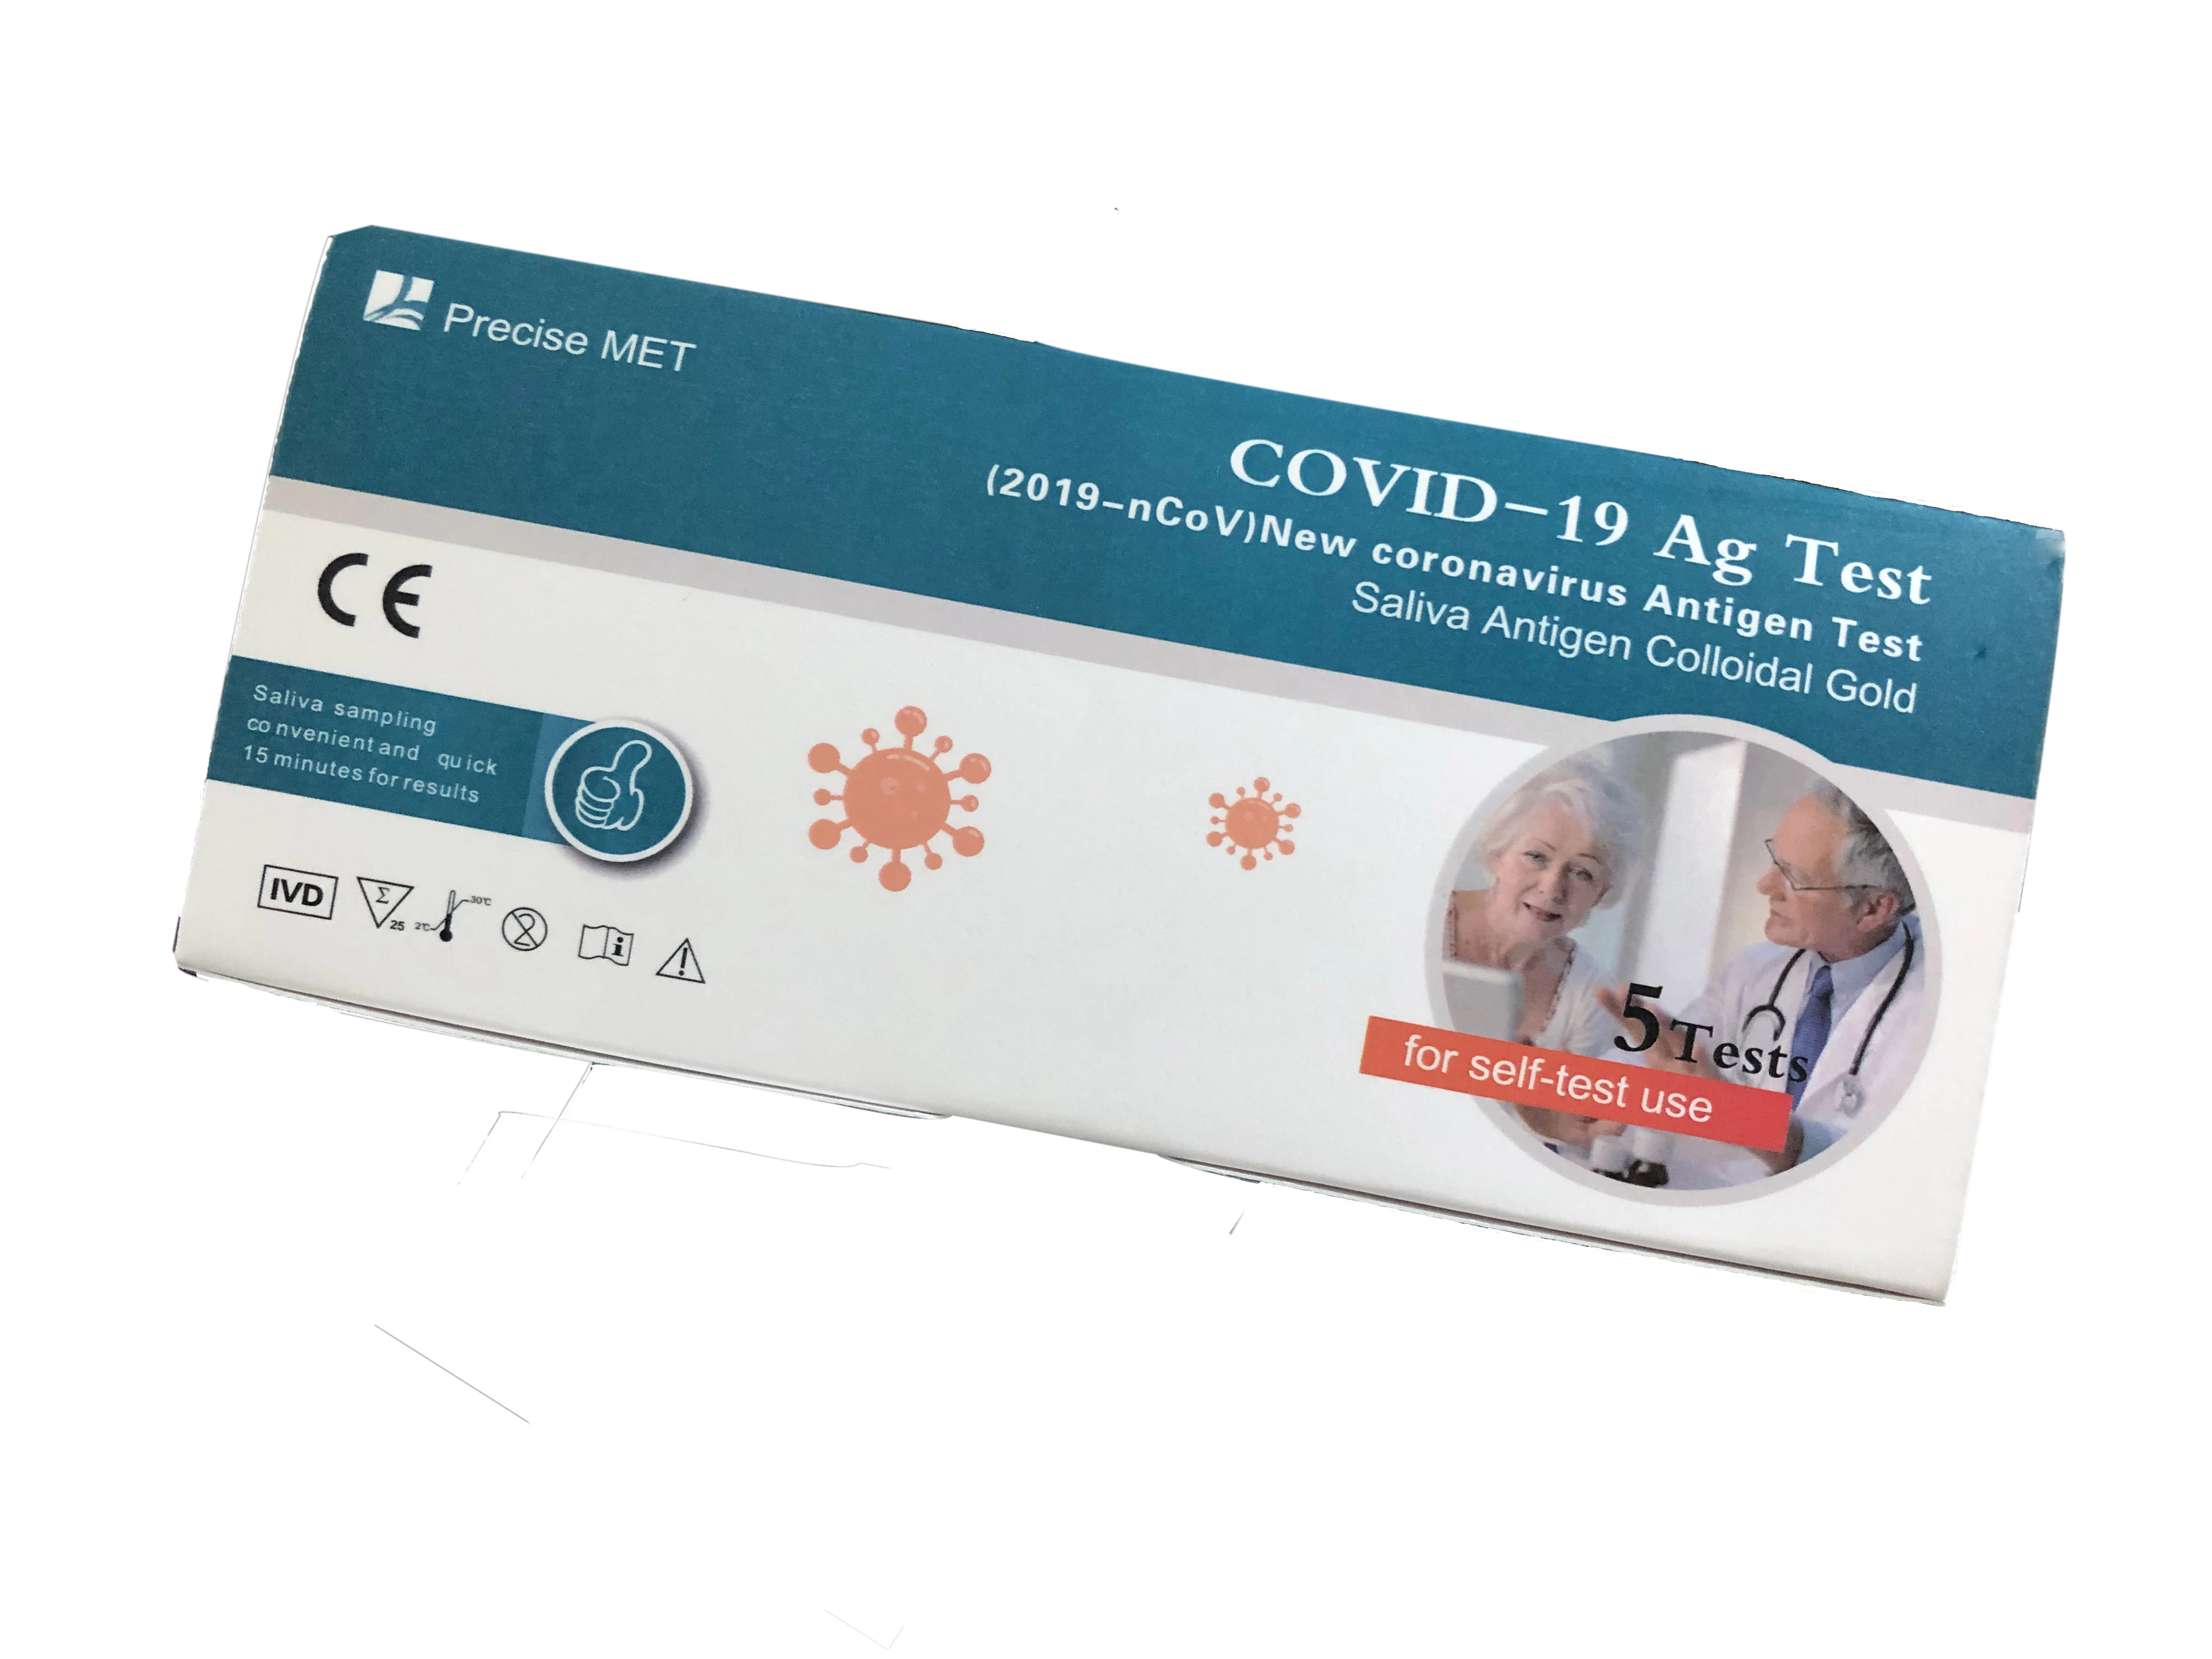 10 tes/Saliva Antigen Test (Koloid Emas)